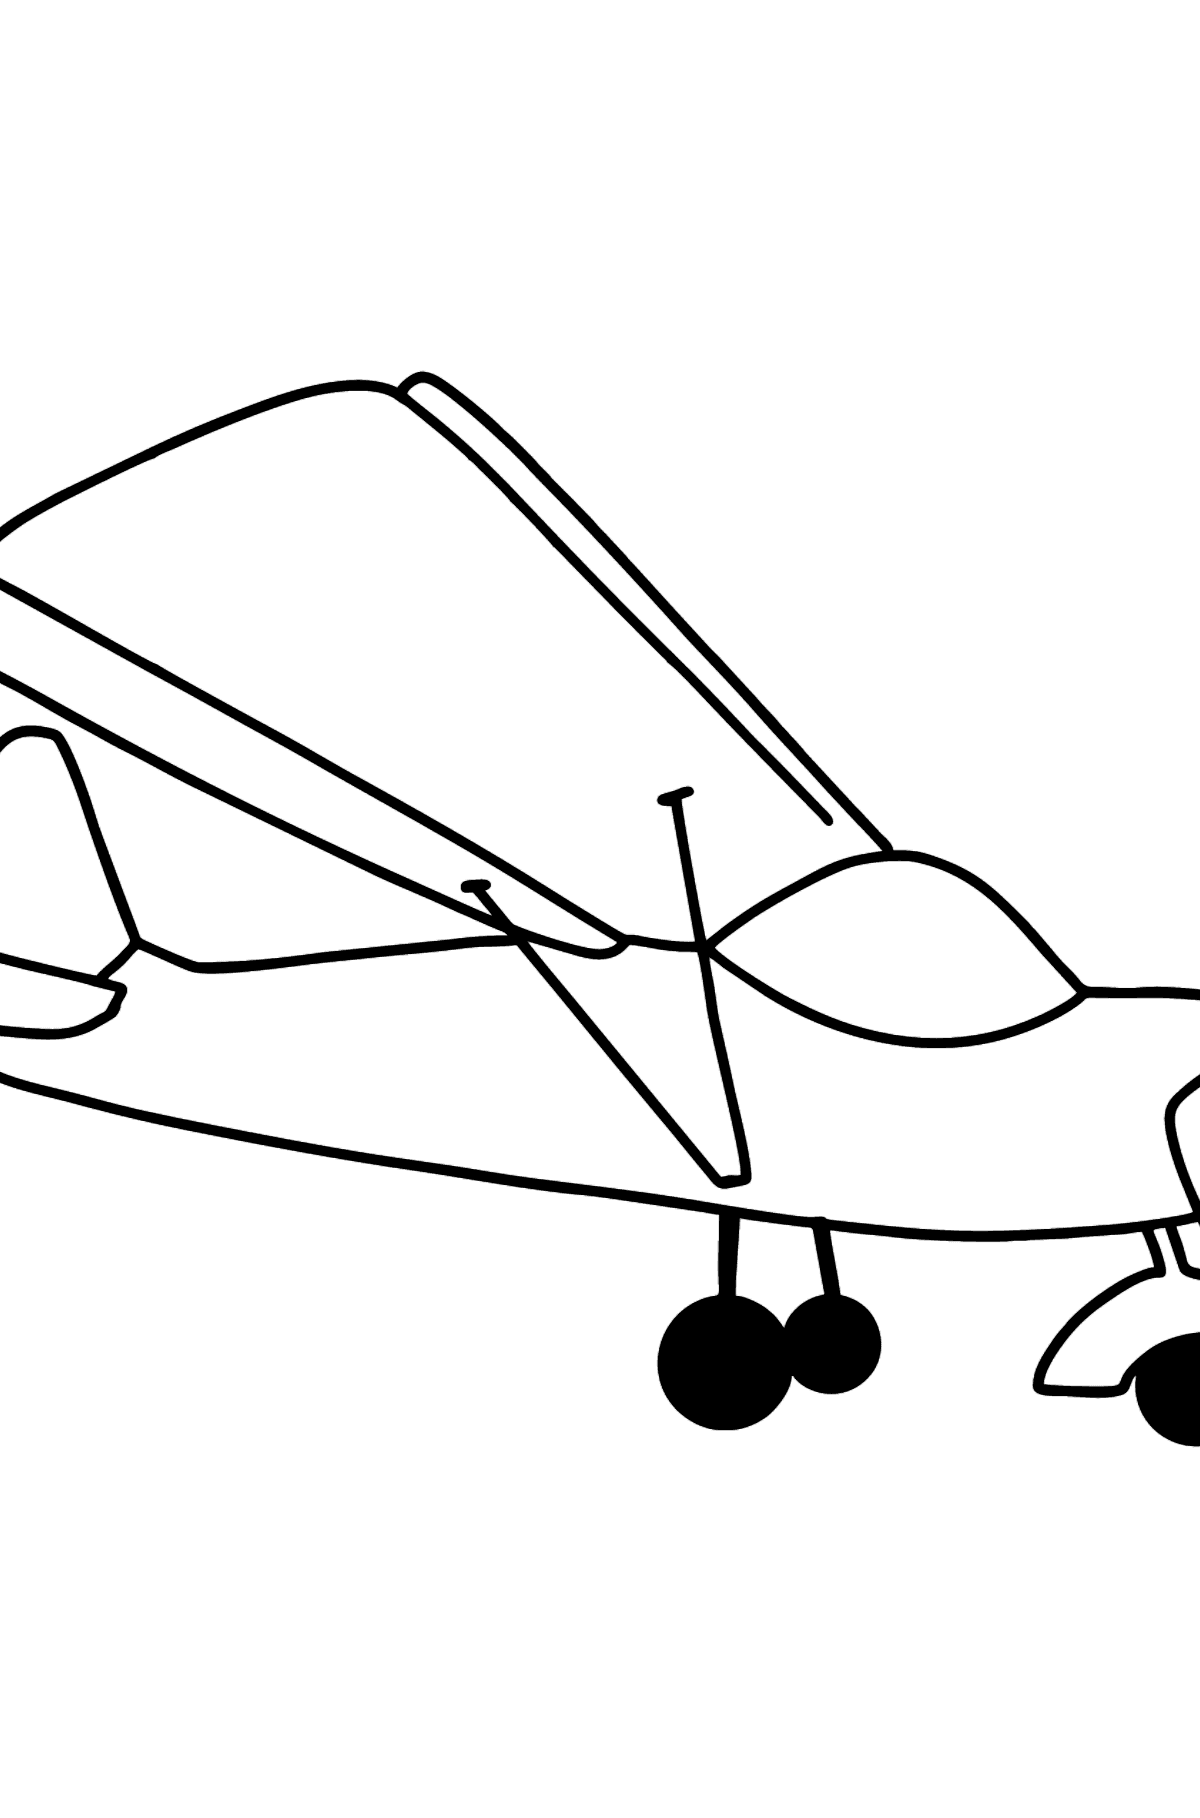 Boyama sayfası küçük uçak - Boyamalar çocuklar için